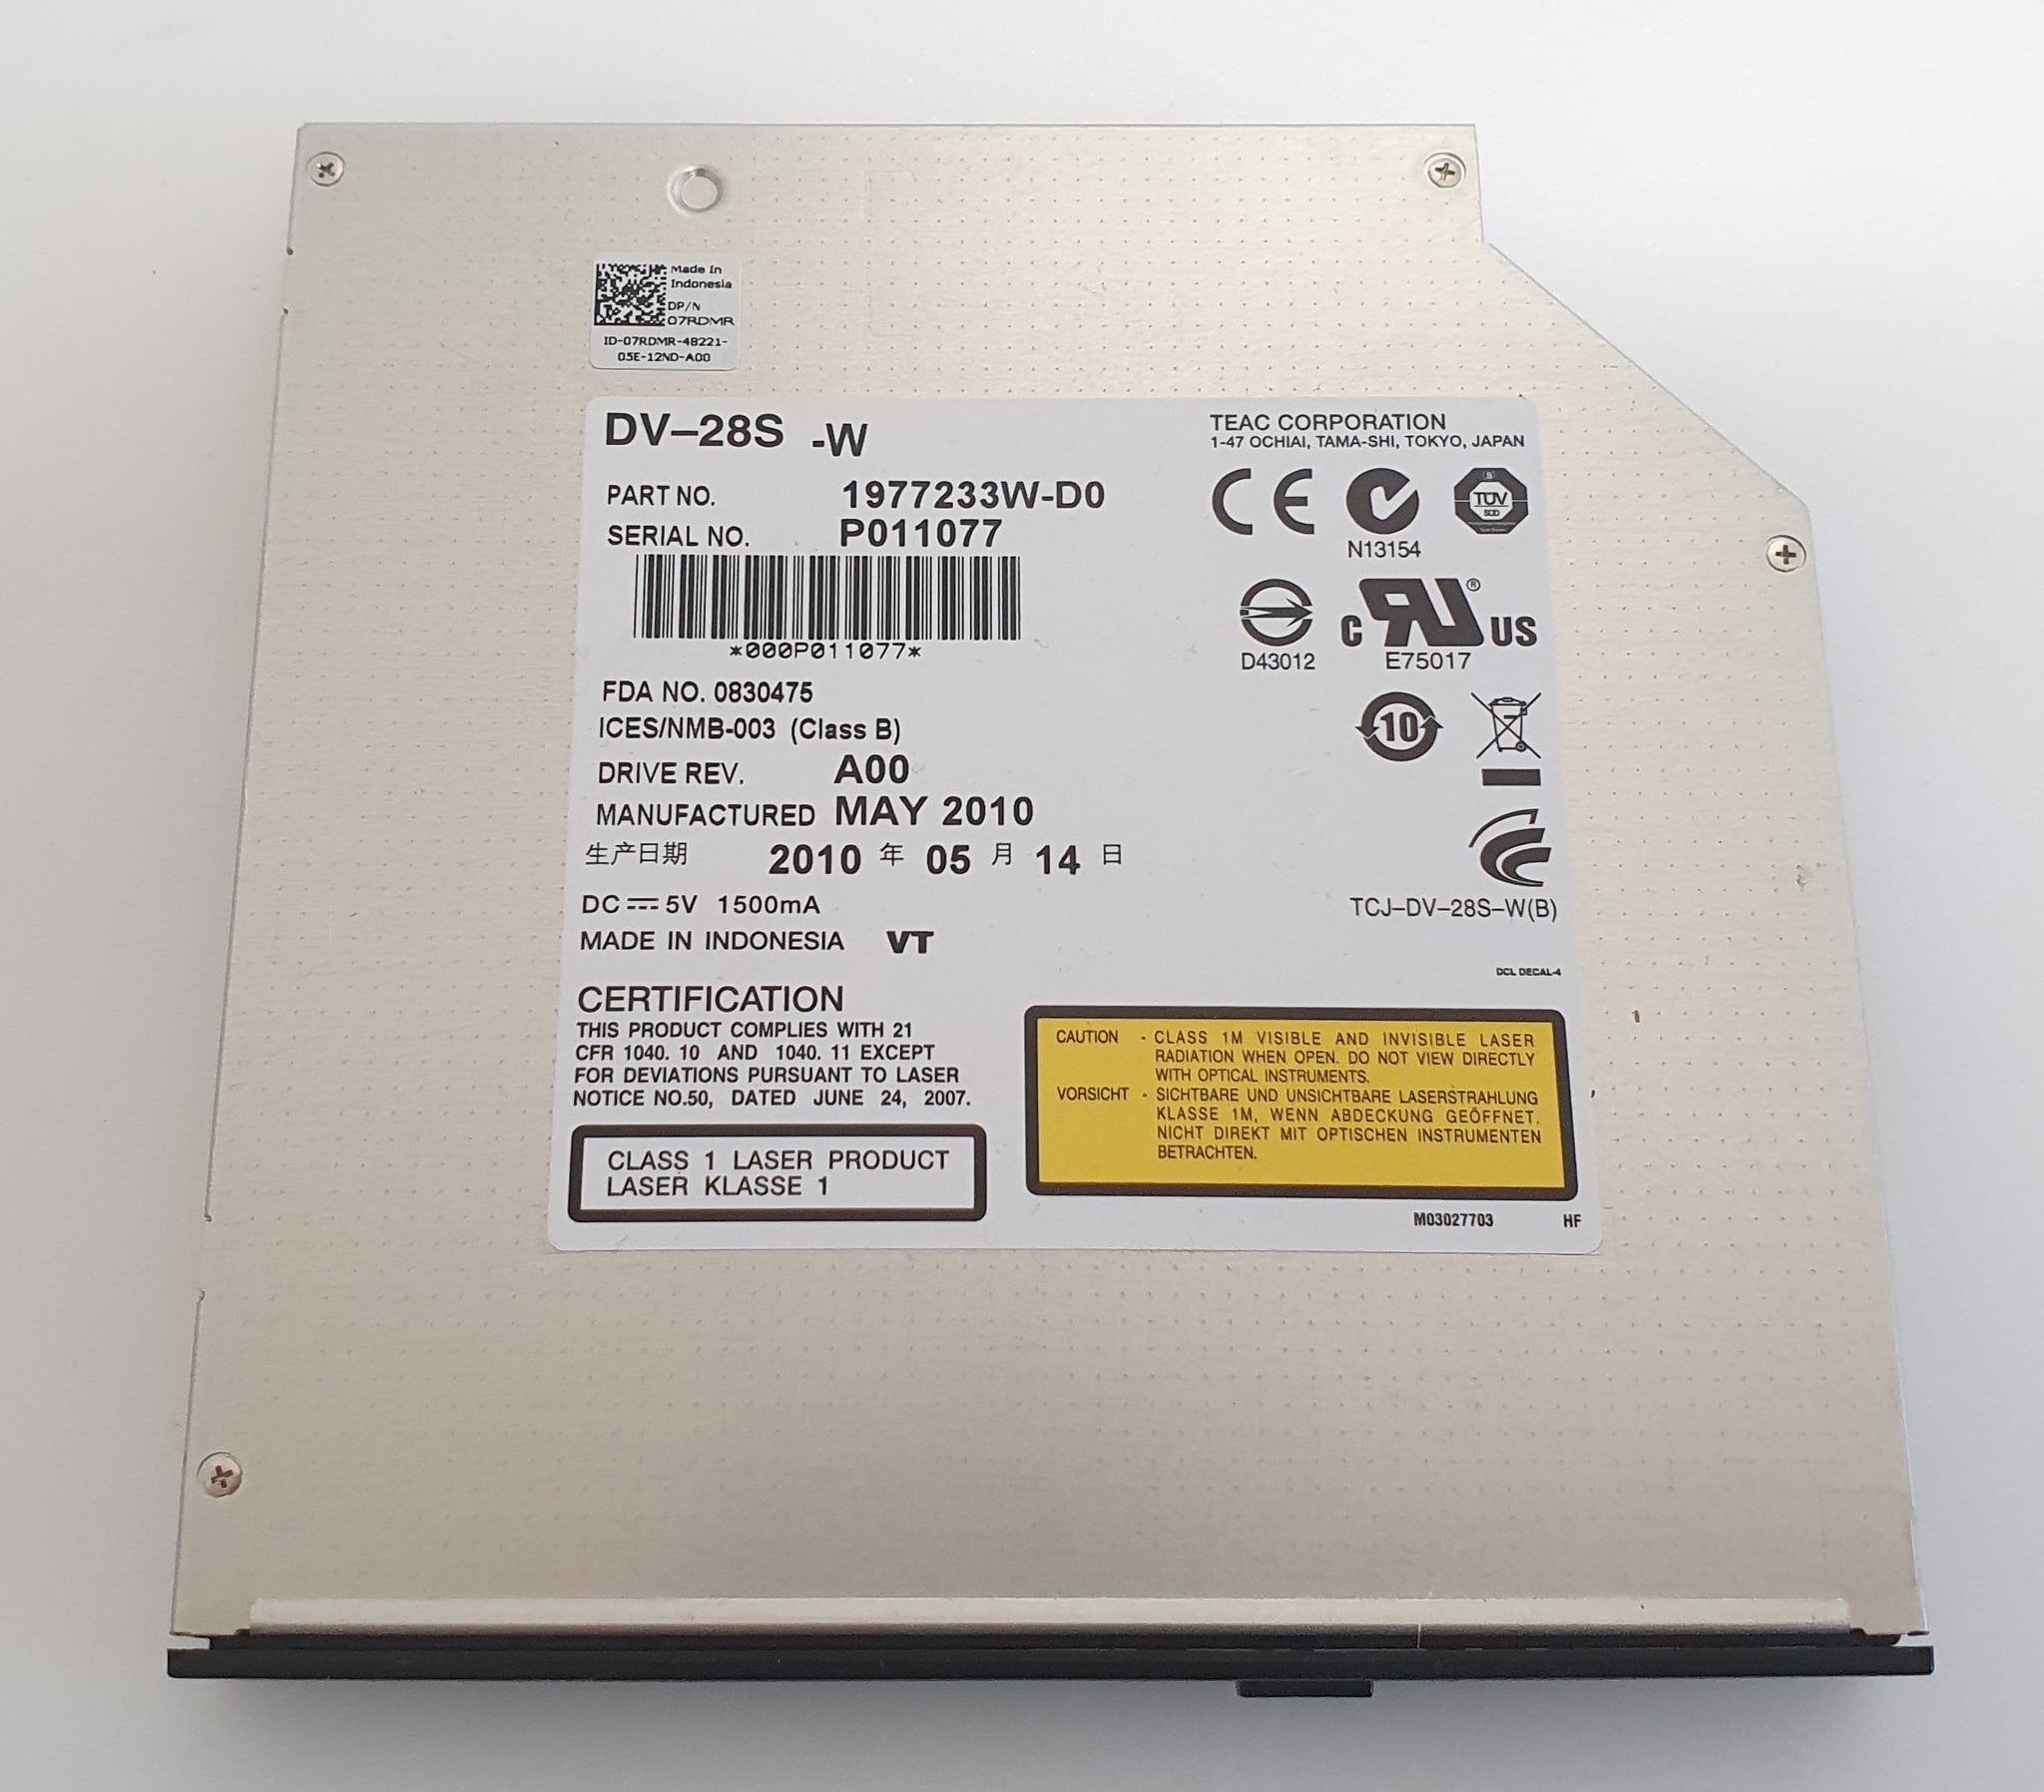 Dell Poweredge R300 - SATA DVD Optical Drive 07RDMR